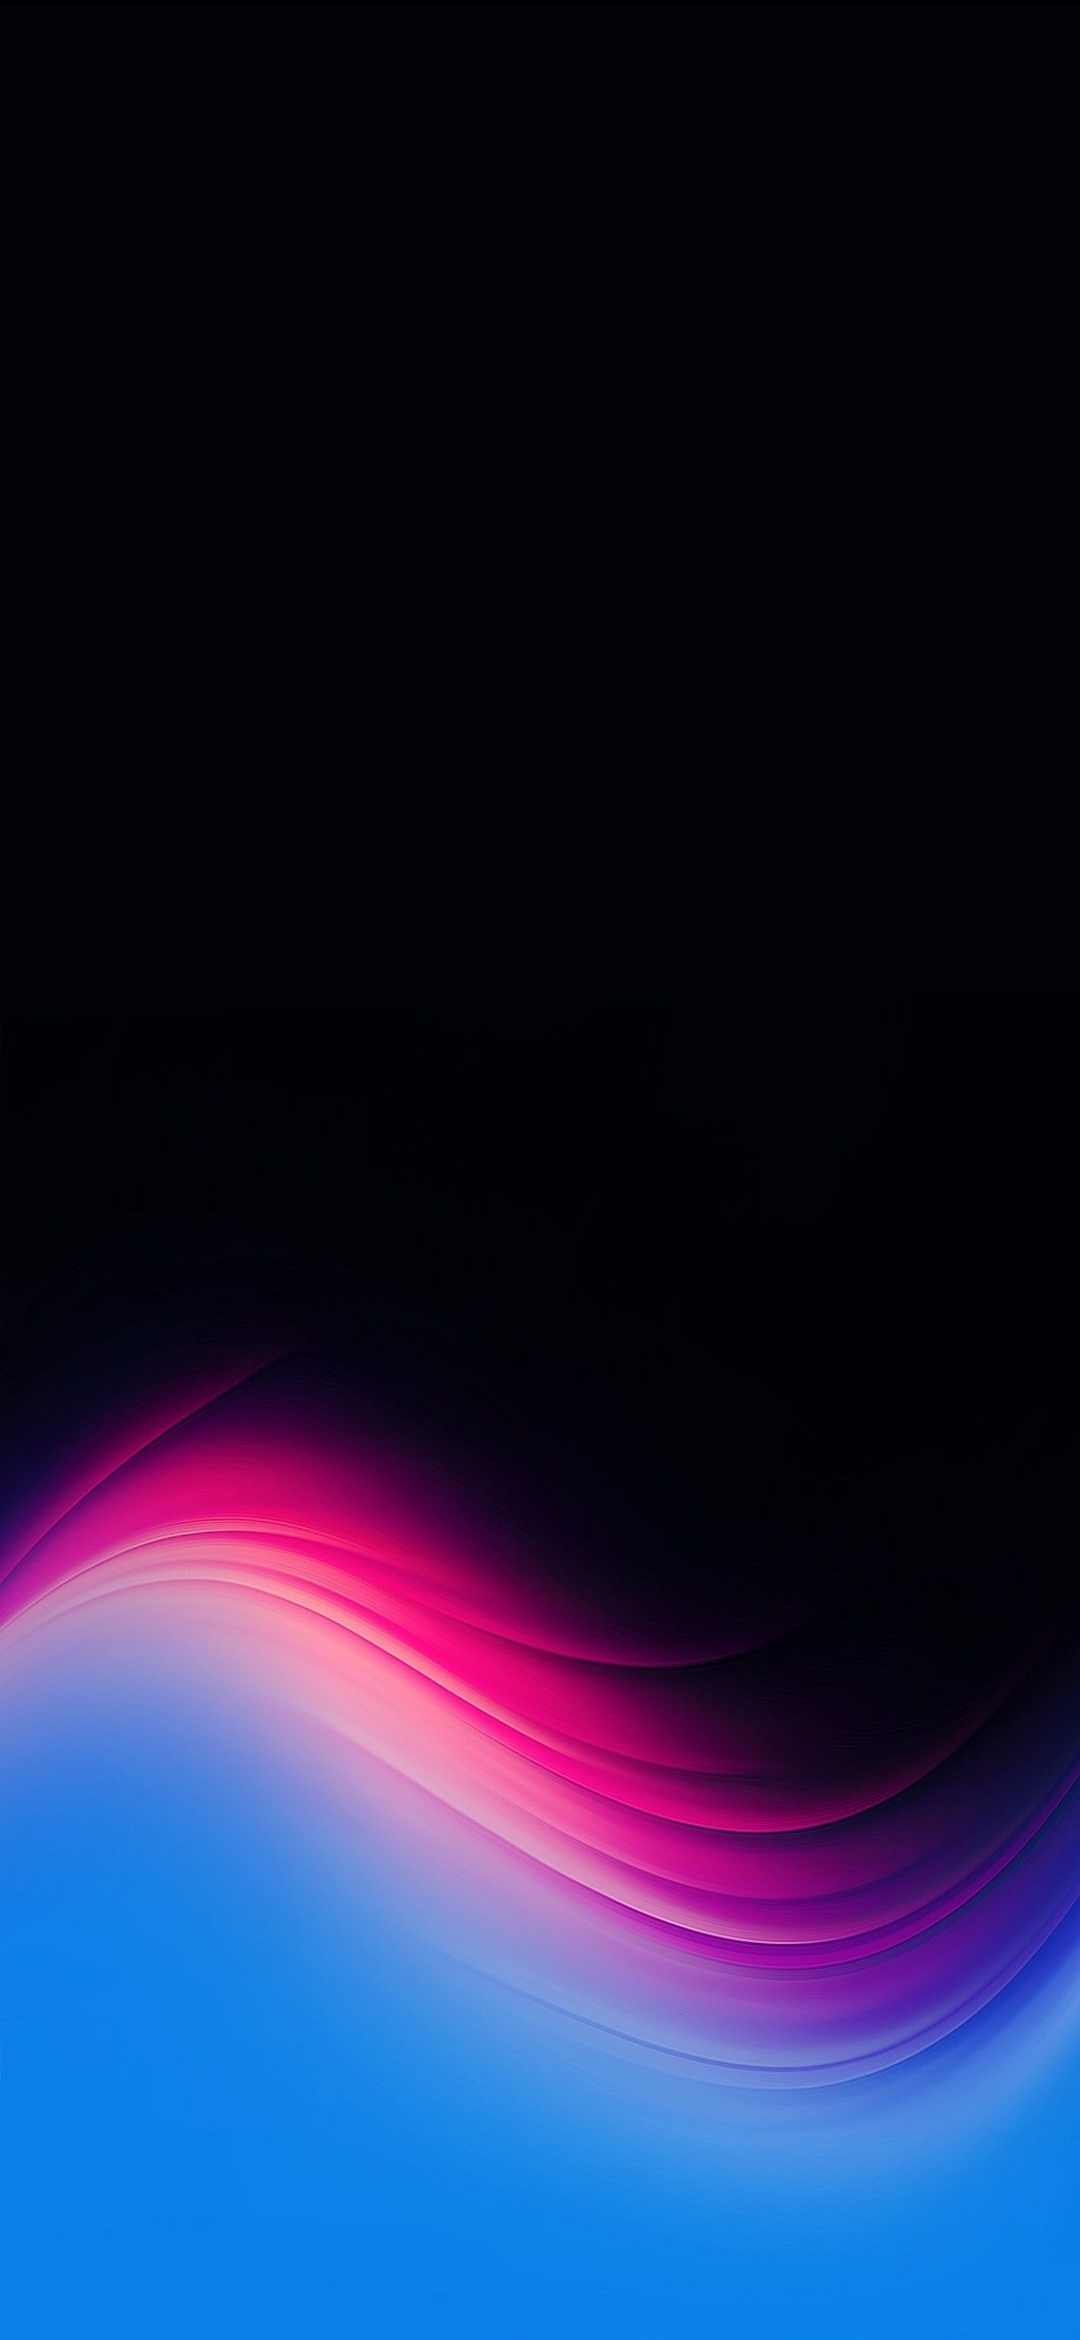 クールな水色 ピンク 黒のテクスチャー Redmagic 5 Android 壁紙 待ち受け スマラン